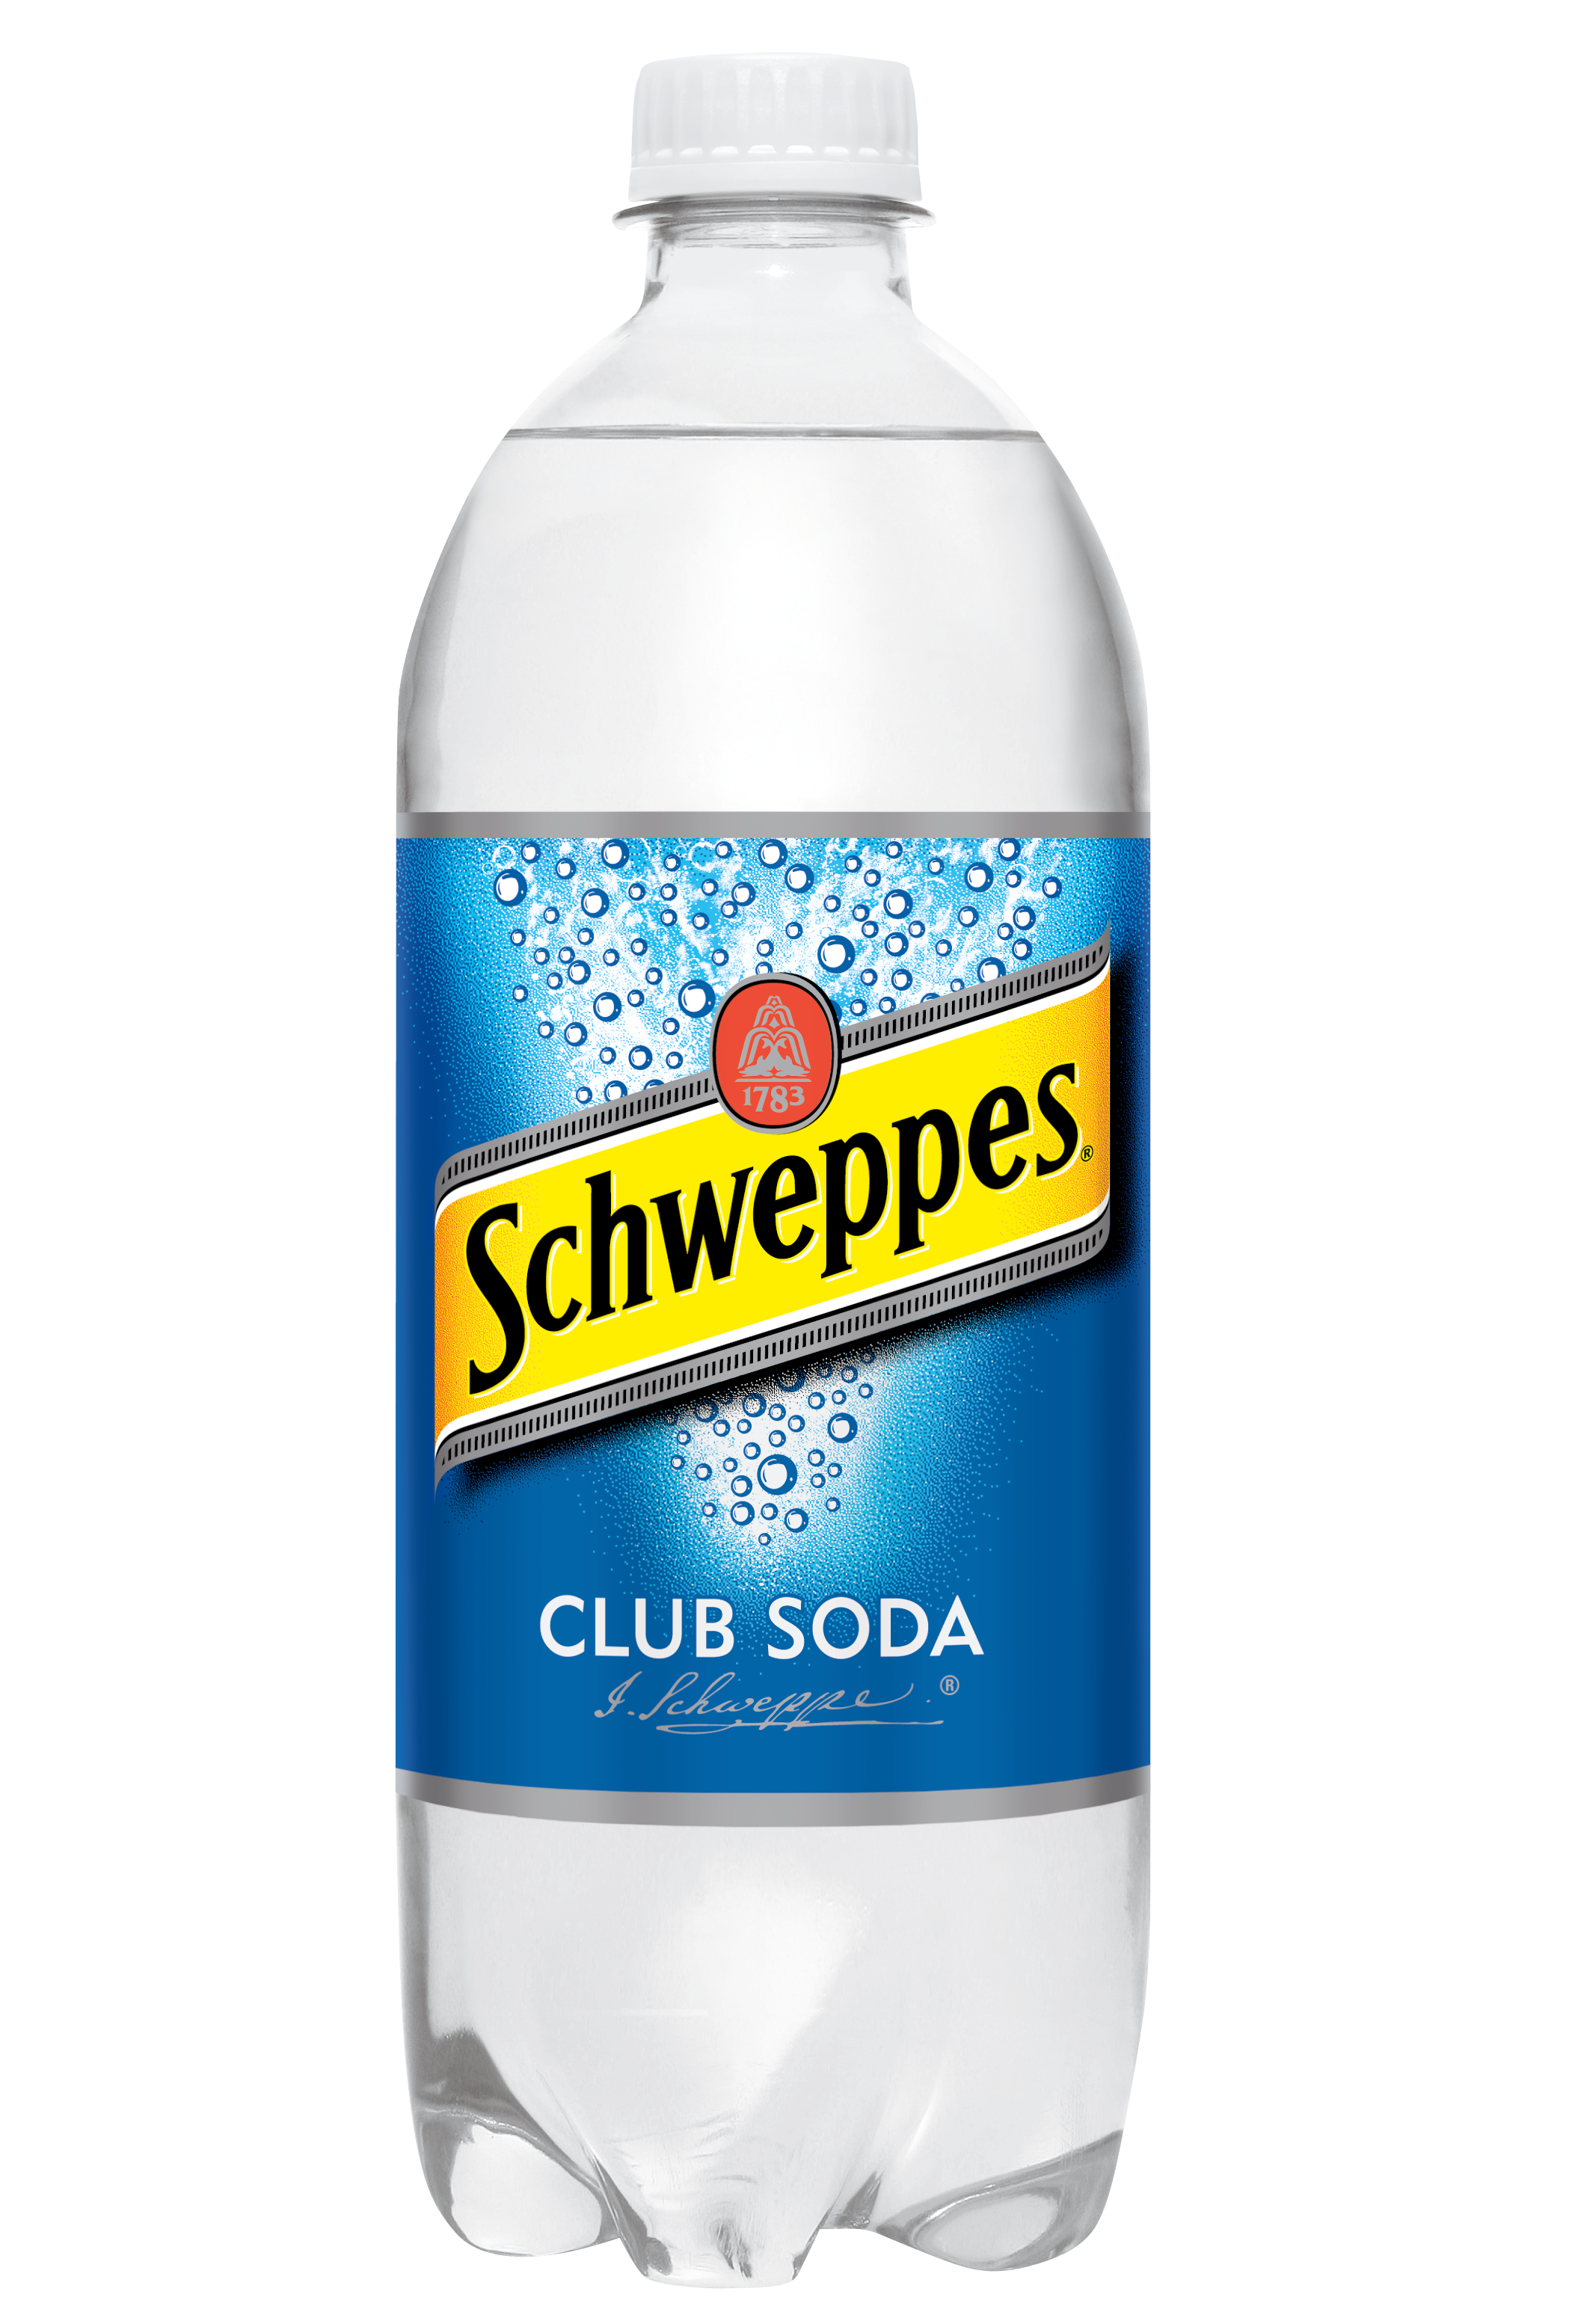 Содовая вода Schweppes. Швепс содовая. Содовая вода Швепс. Содовая вода для коктейлей.